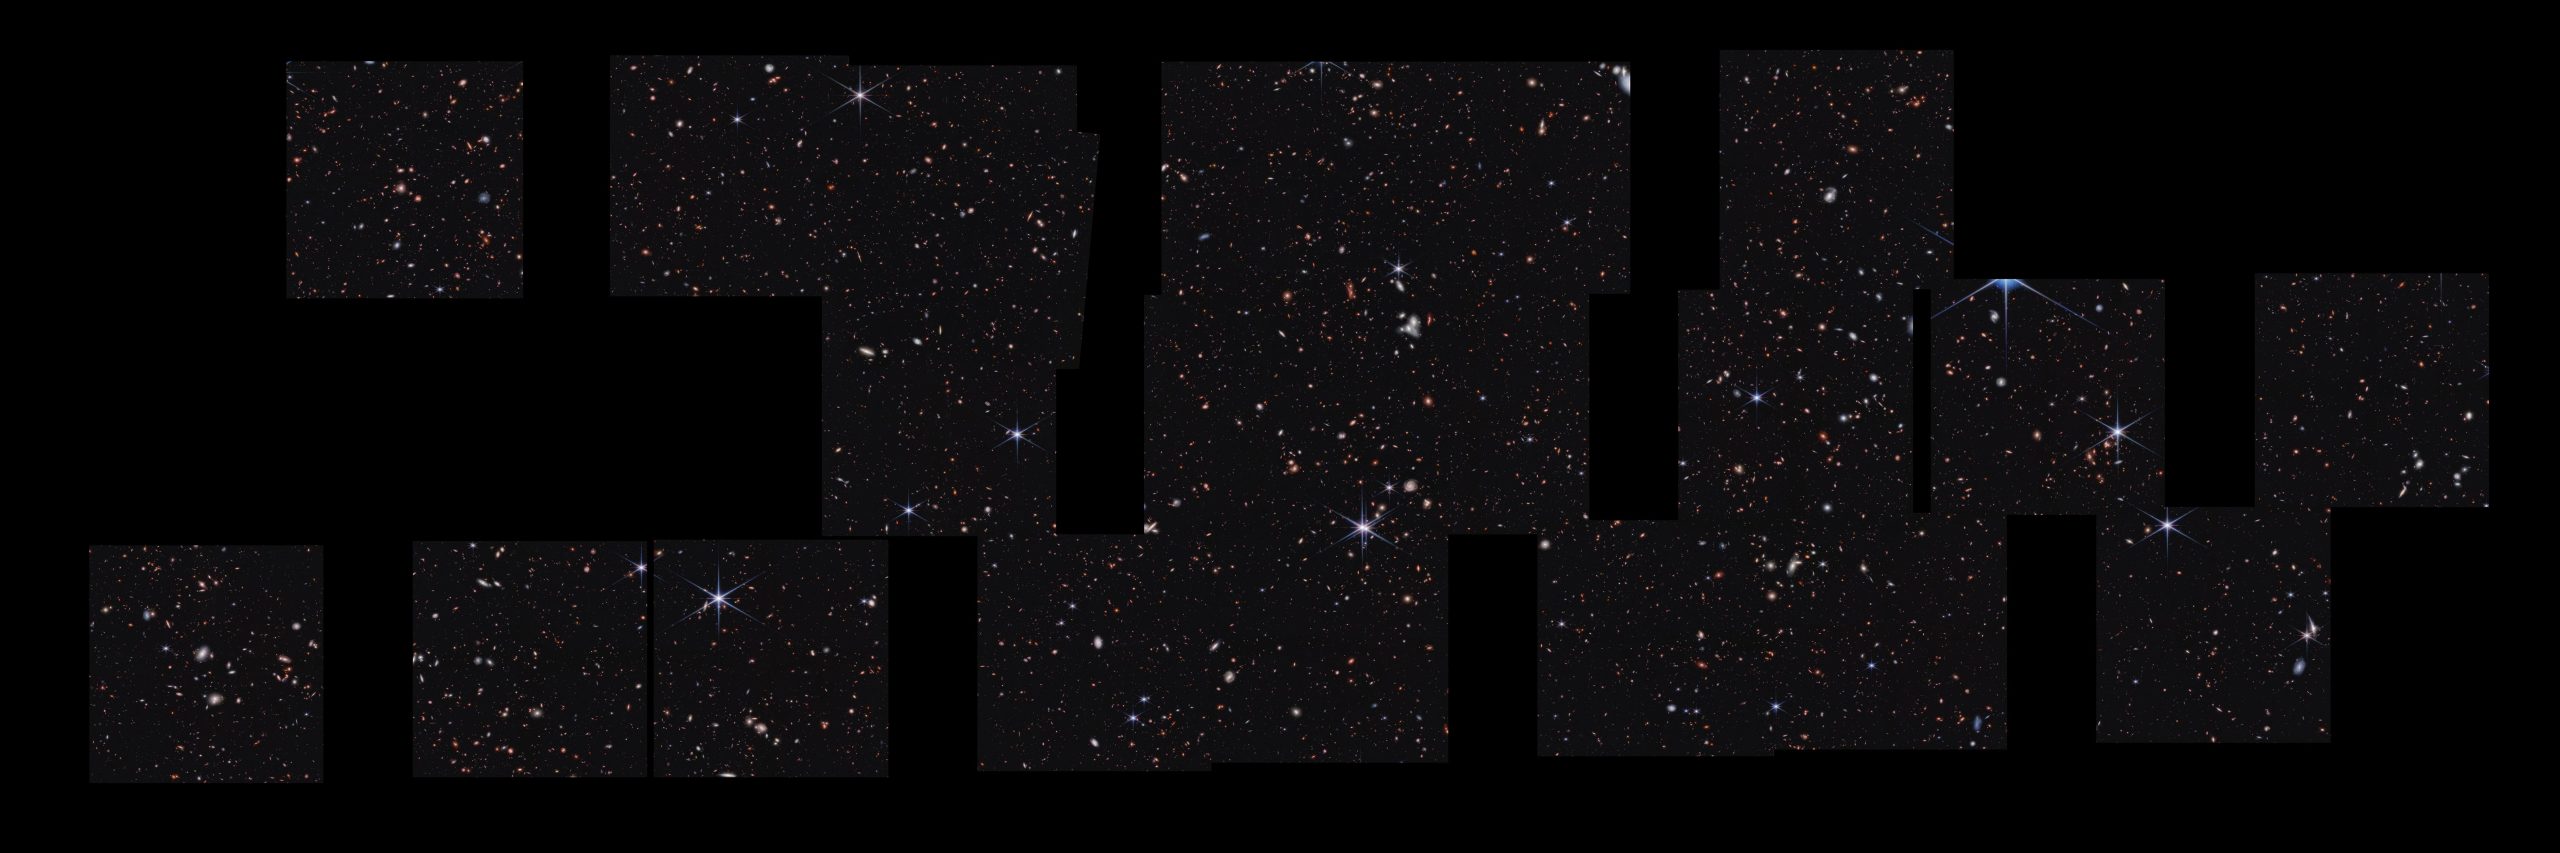 Cosmic-Evolution-Early-Release-Science-CEERS-Survey-Webb-NIRCam-Image-scaled.jpg